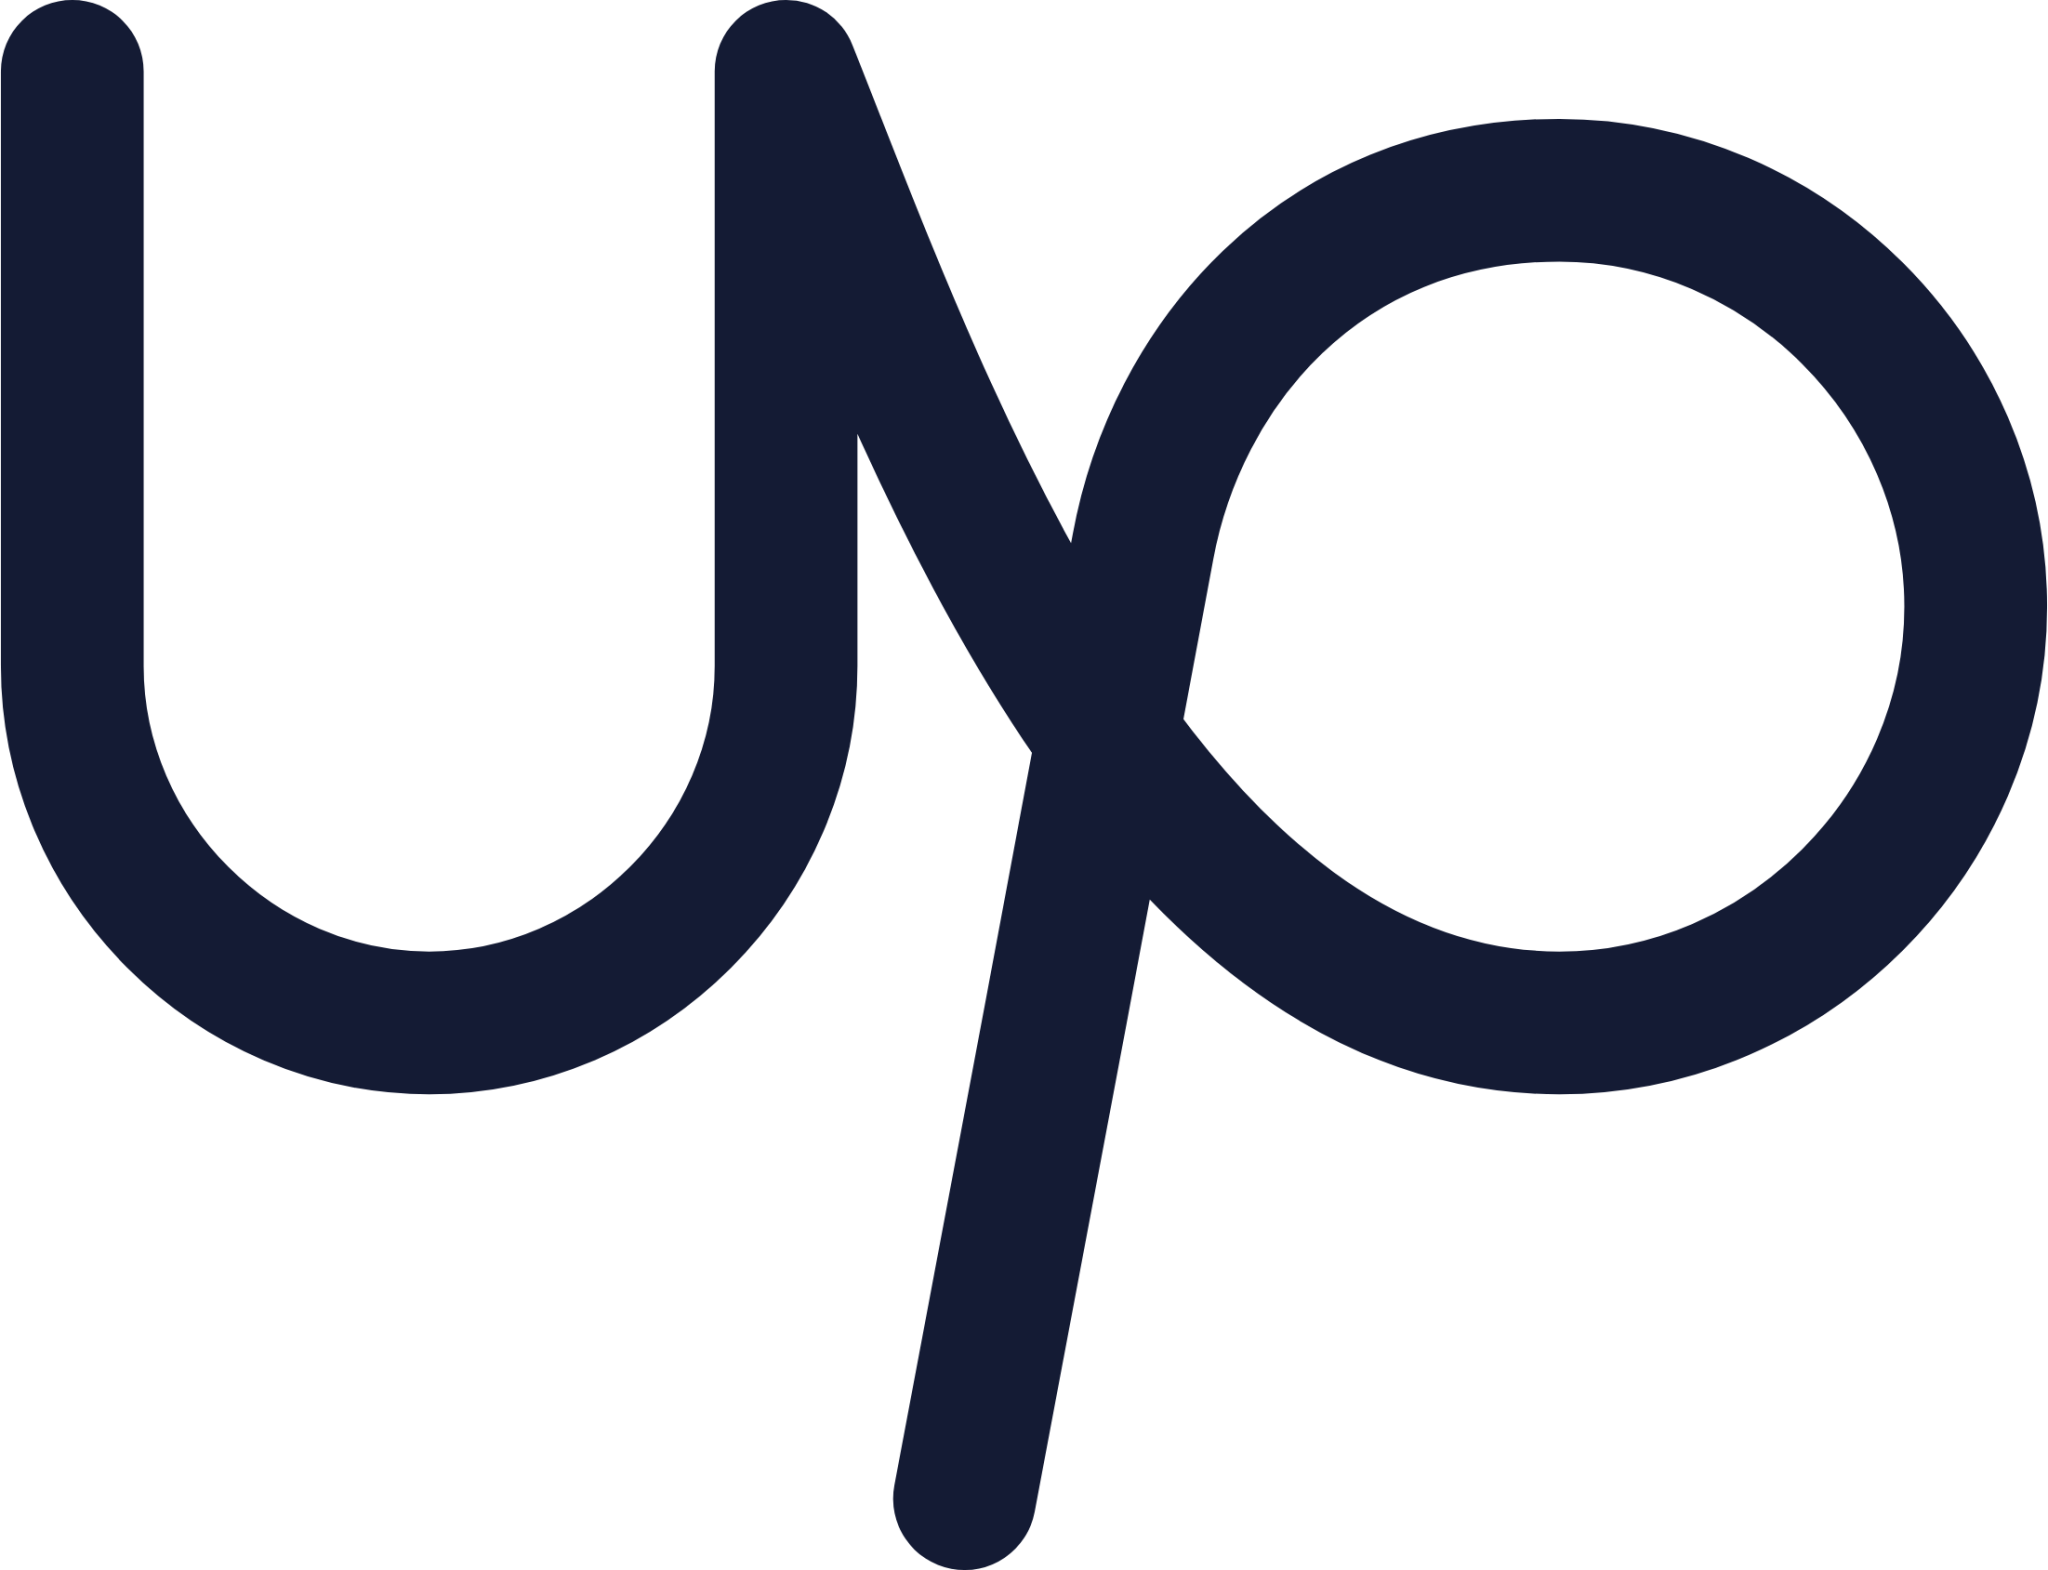 upwork icon